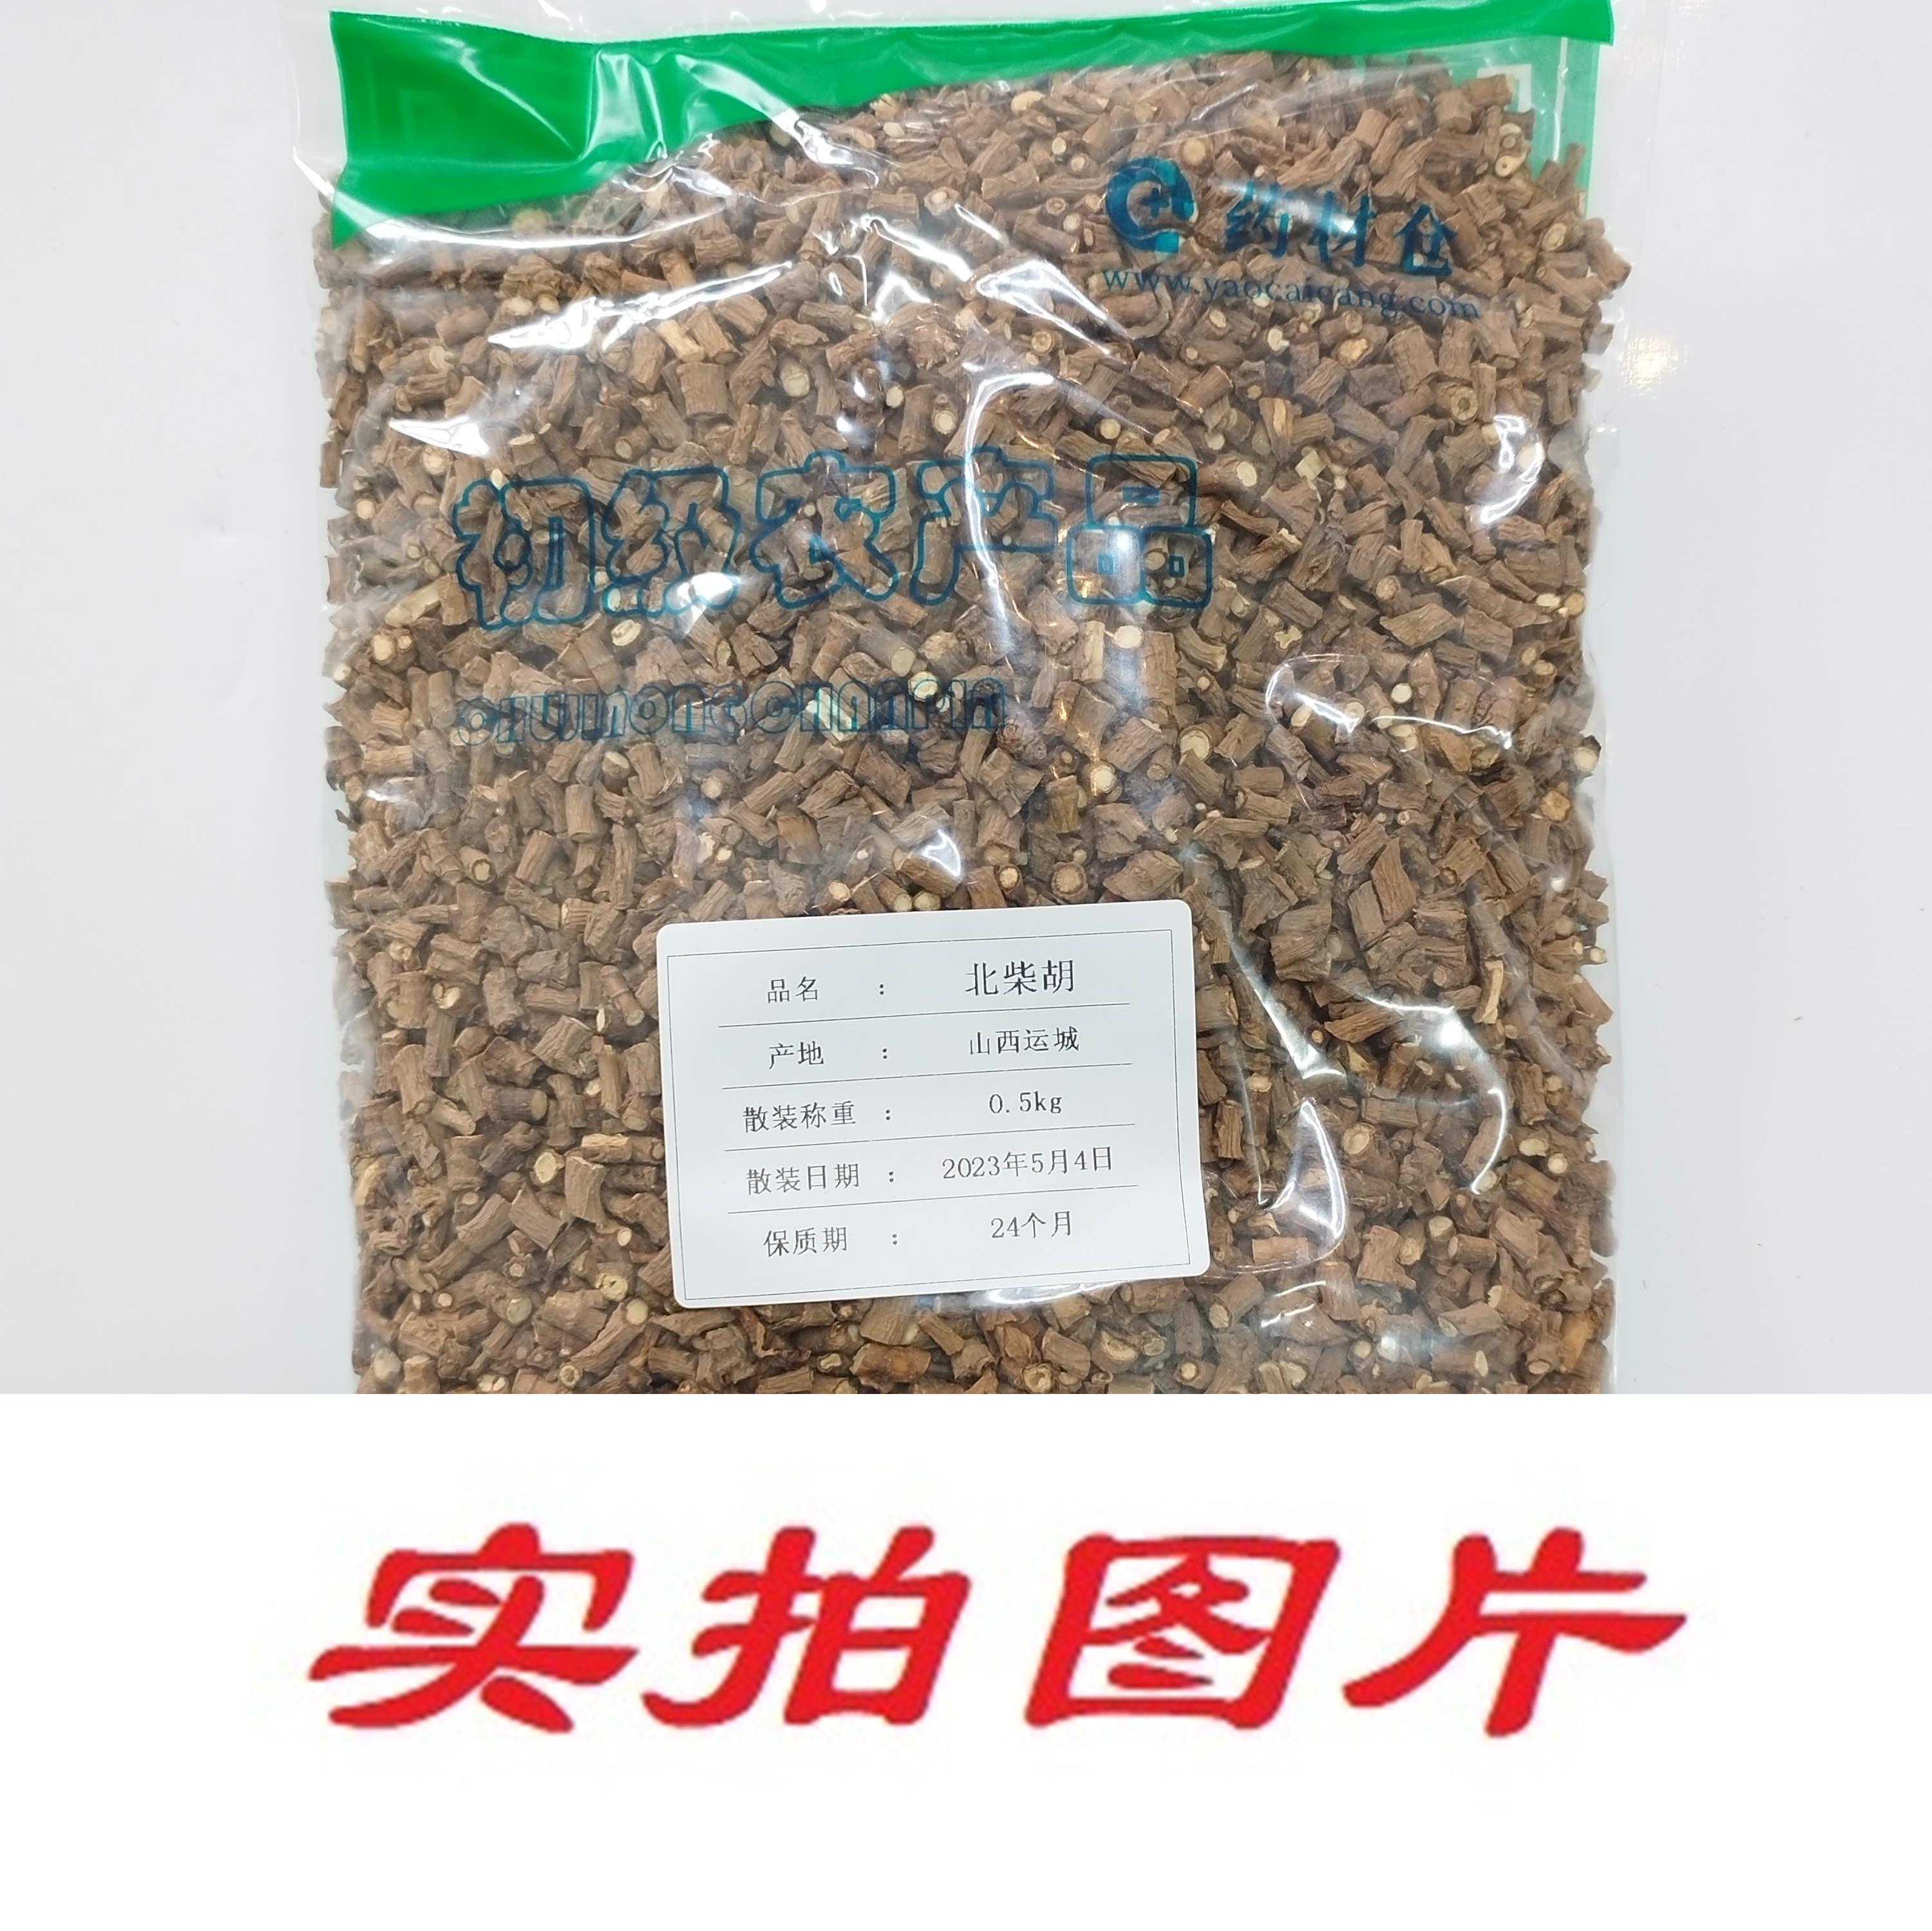 【】北柴胡0.5kg-农副产品